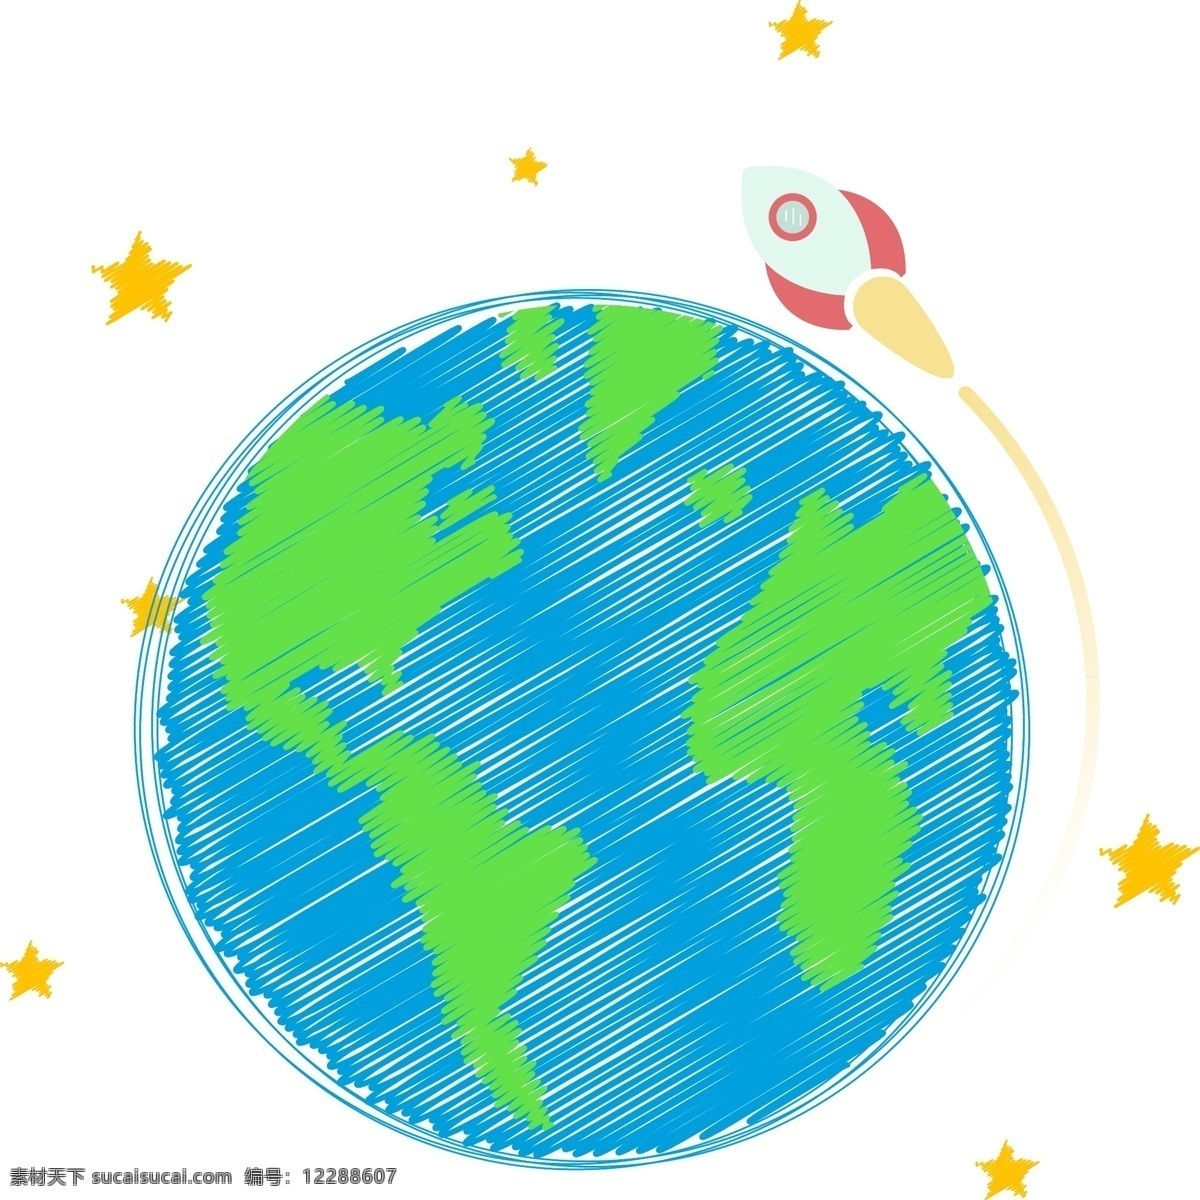 世界 清洁 地球日 手绘 地球 矢量 元素 节日 火箭 清洁日 原创